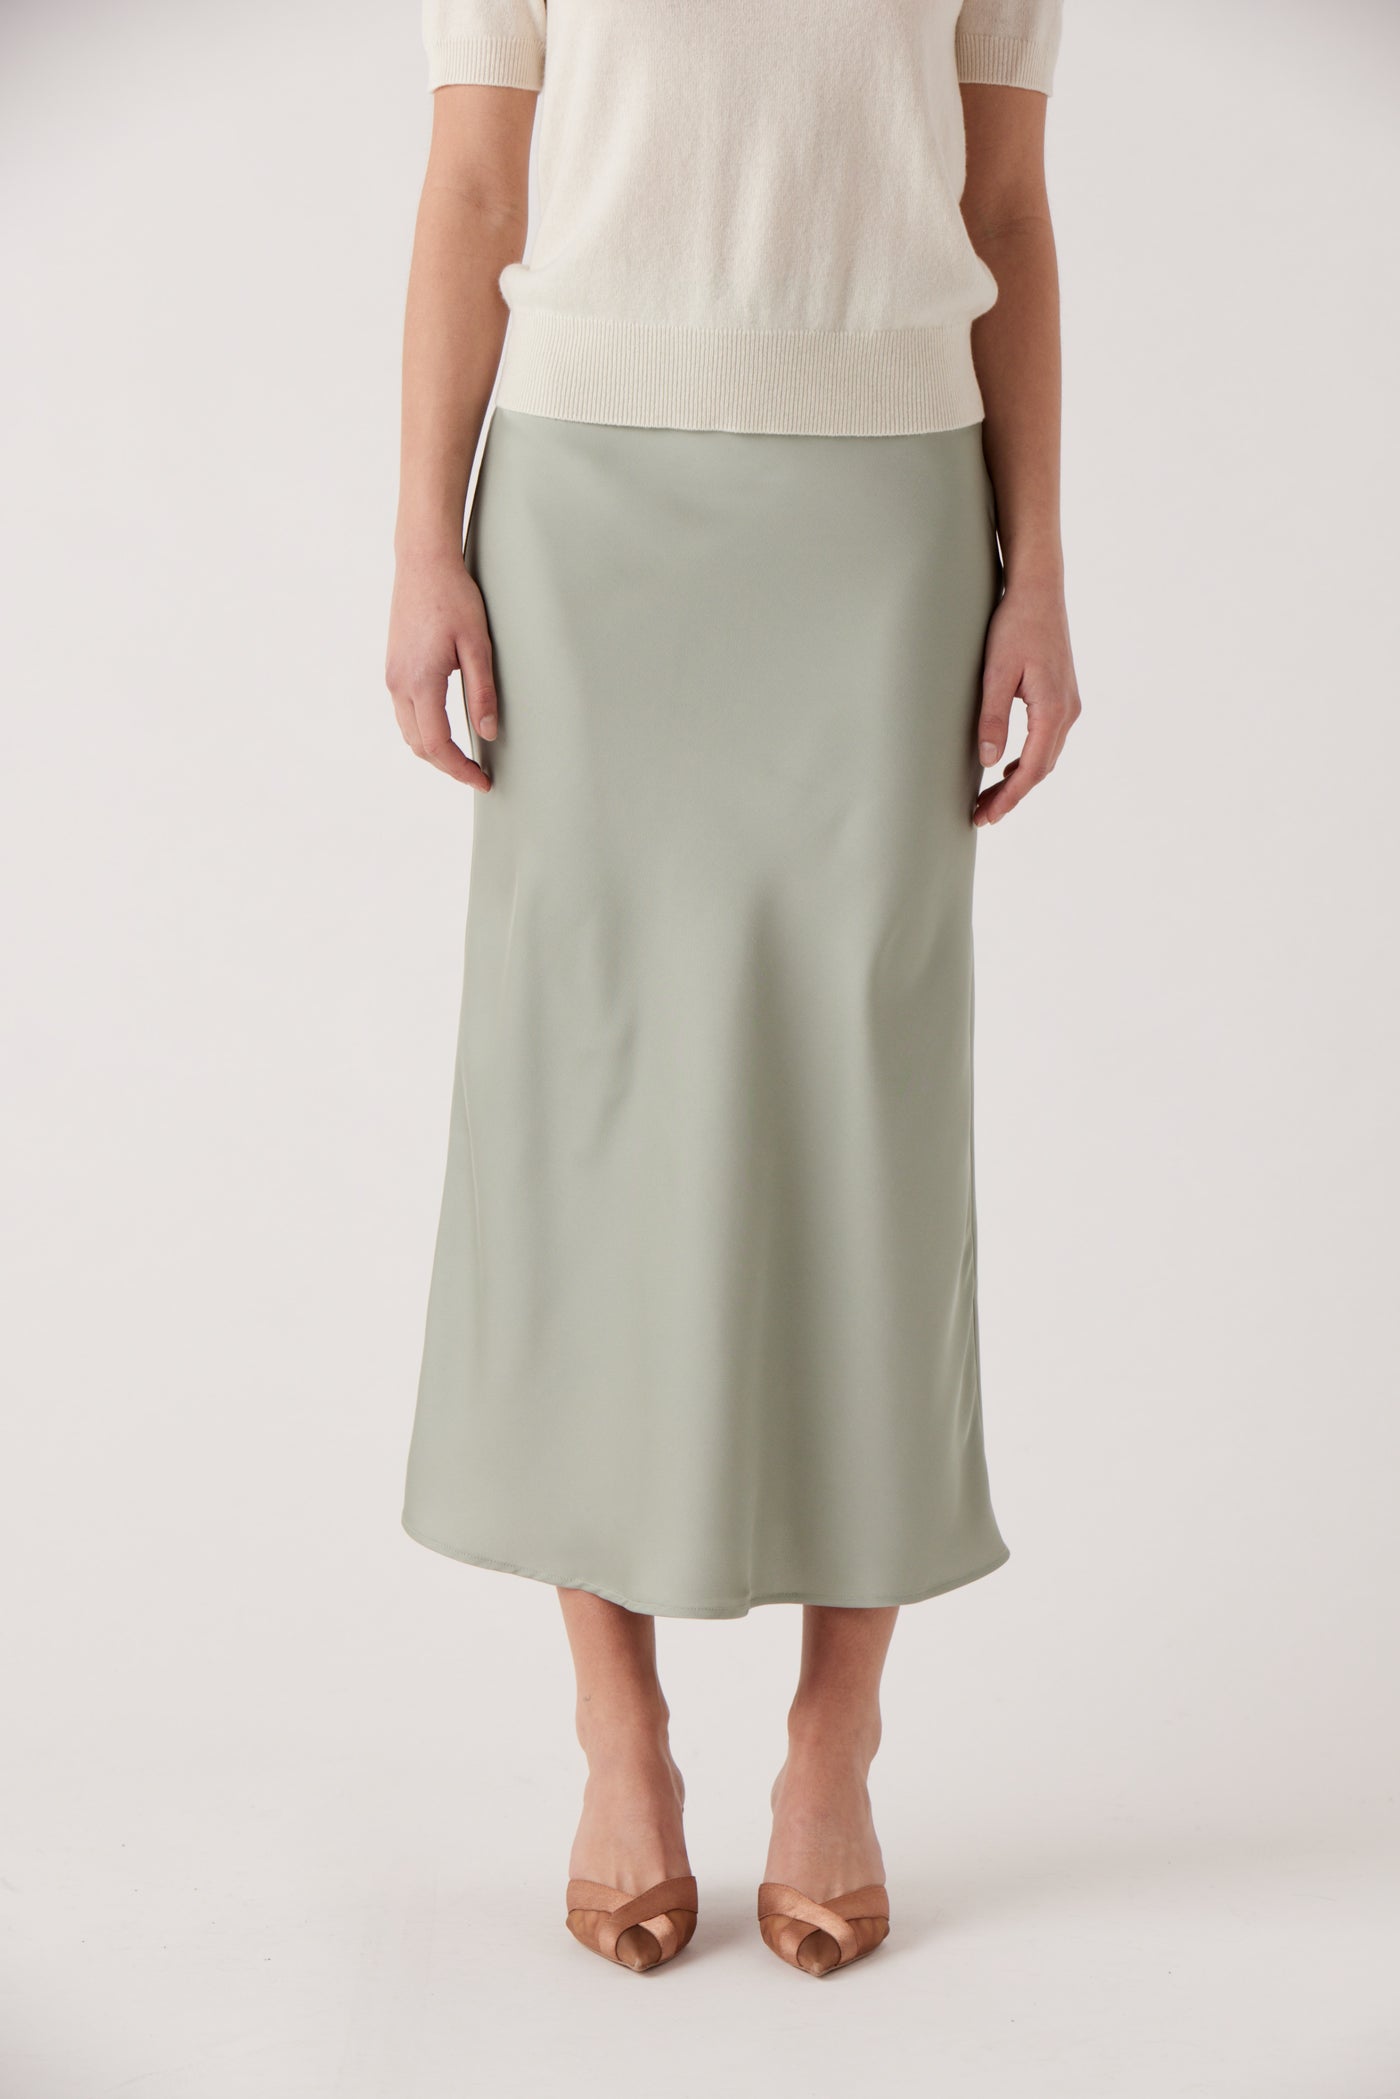 Ava Sage Satin Skirt